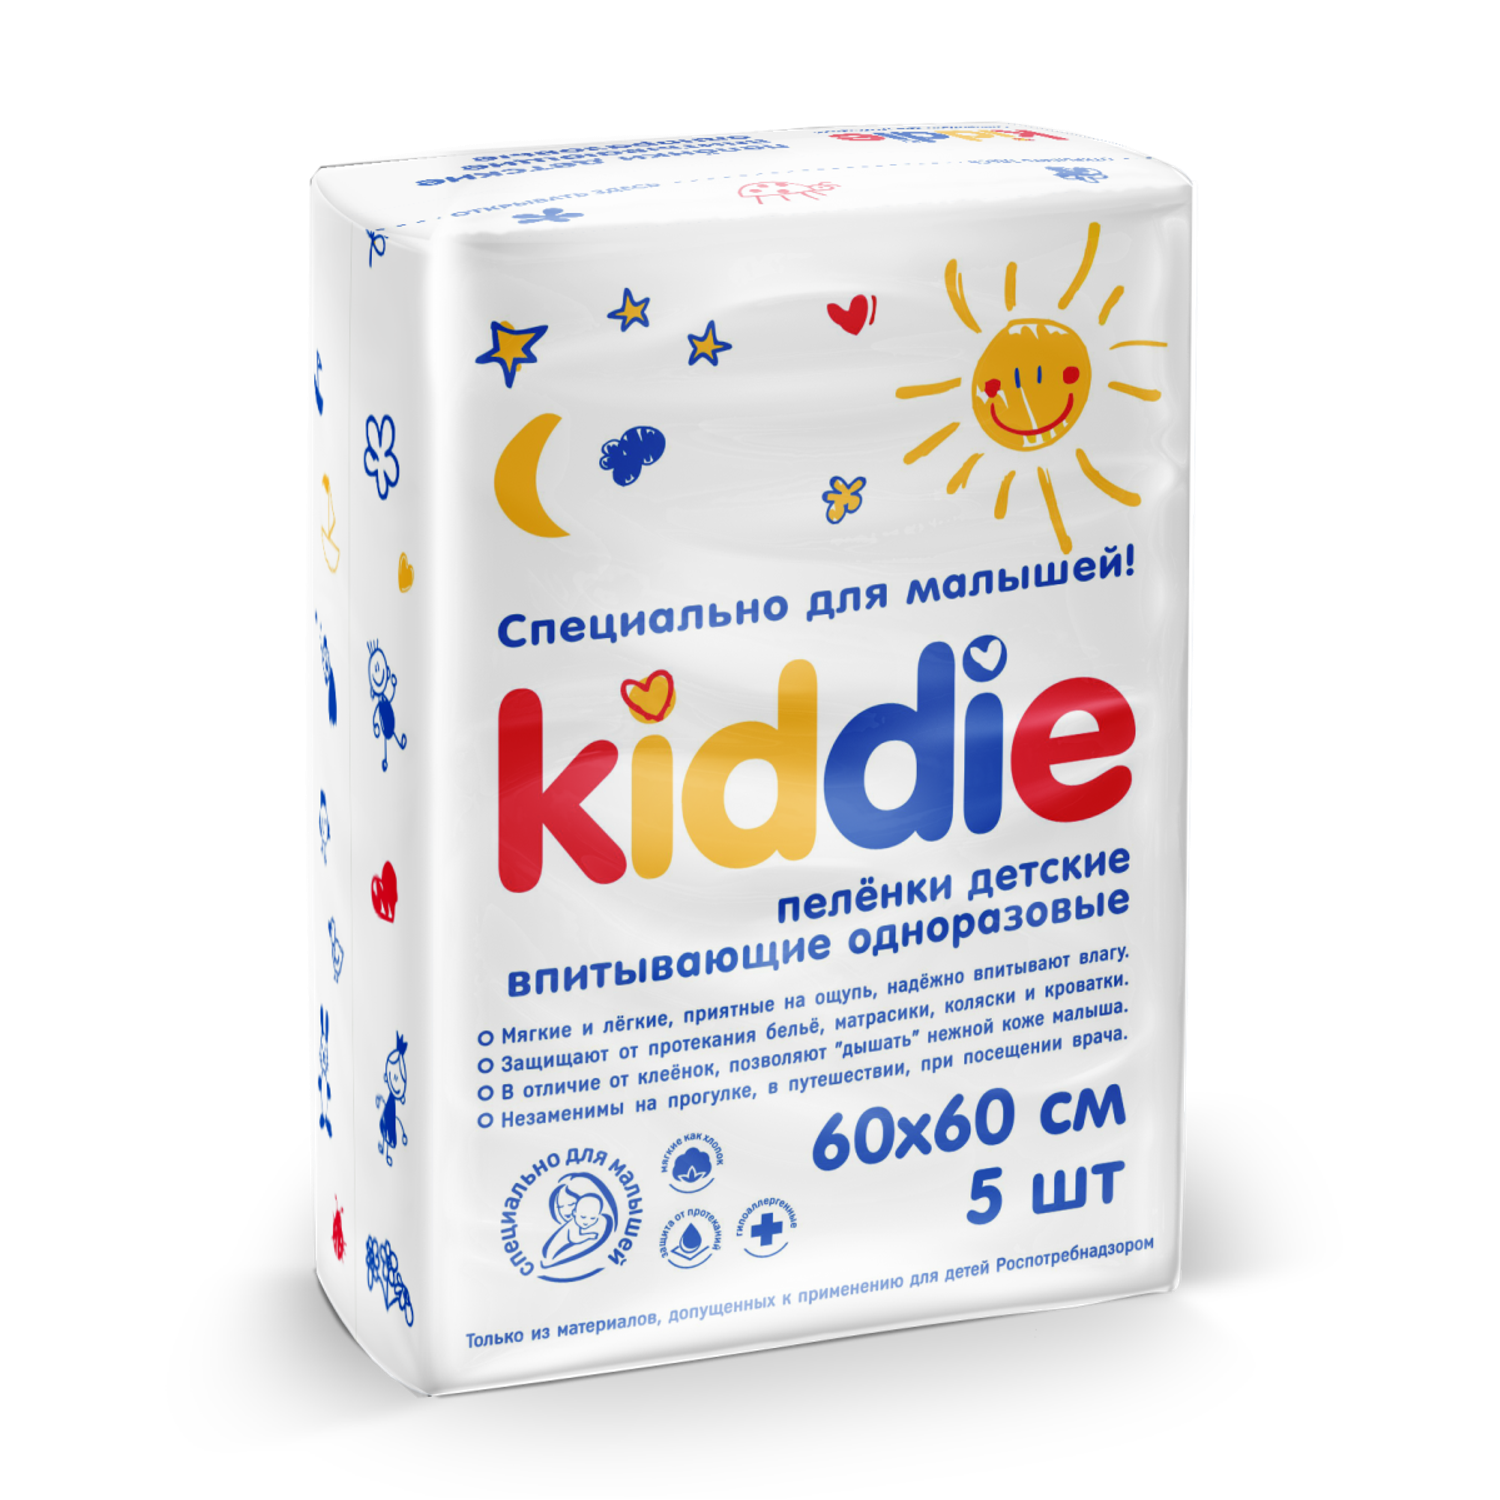 Пеленки детские KIDDIE Эконом 60х60 см упаковка 5 шт - фото 1